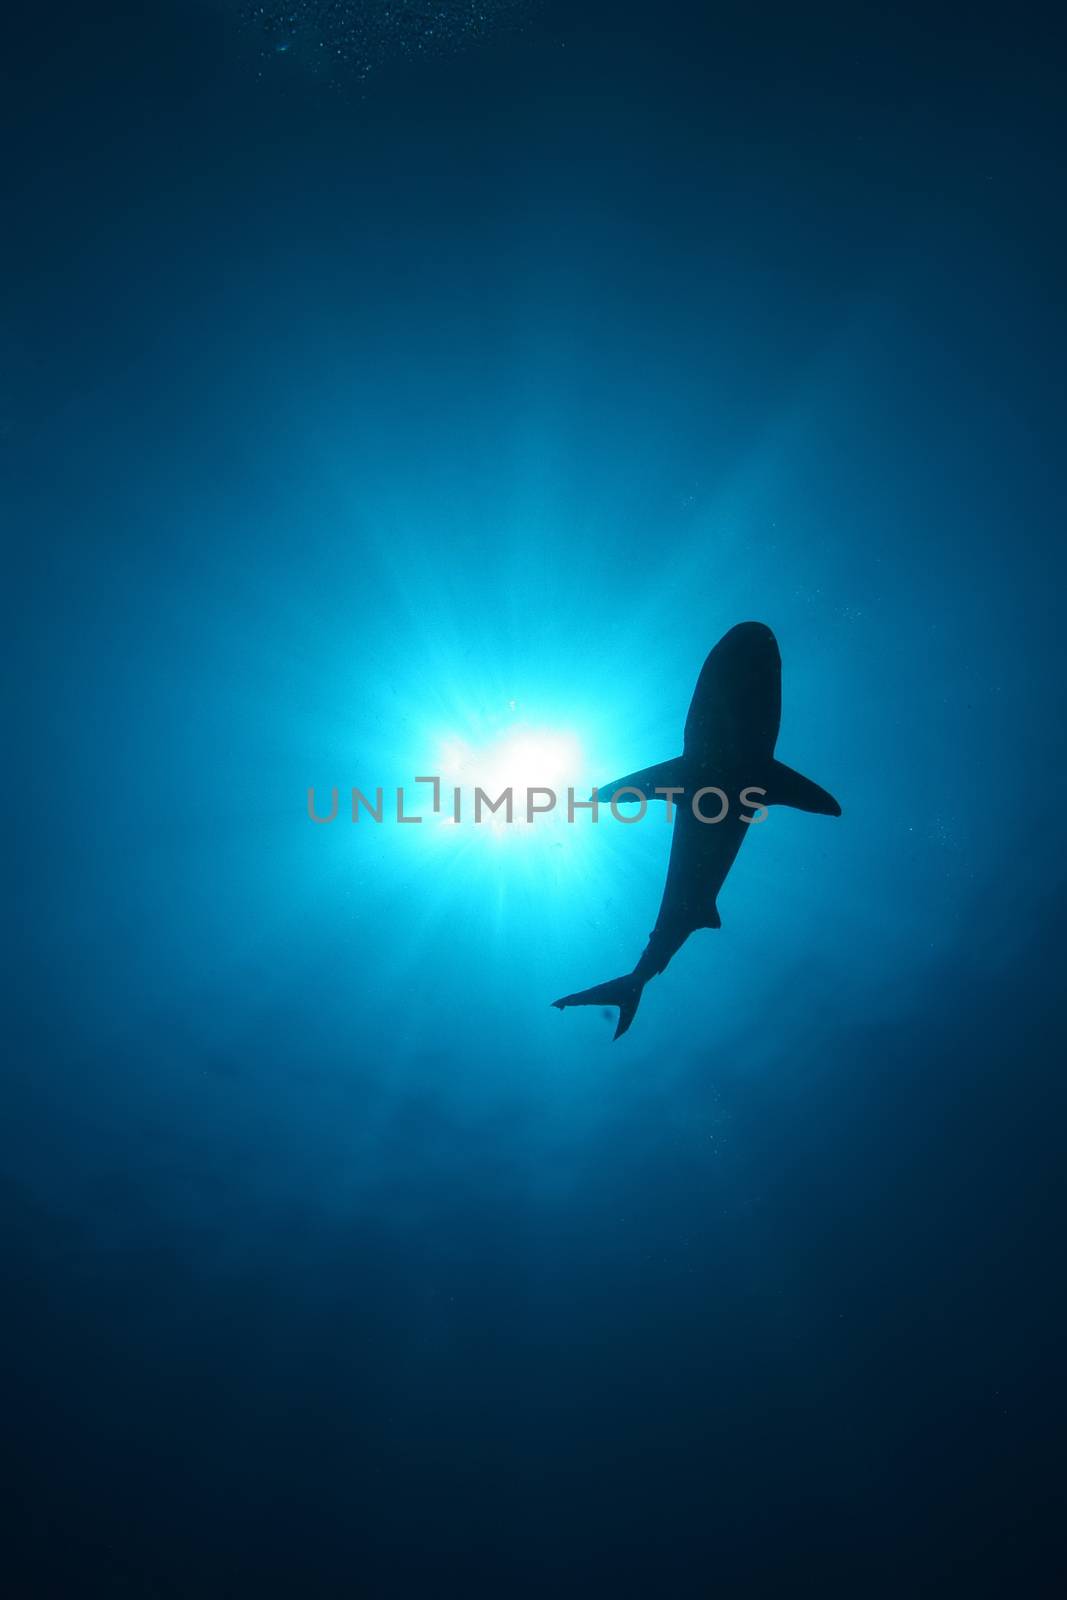 White Shark Dangerous big  Fish Papua New Guinea Pacific Ocean by desant7474